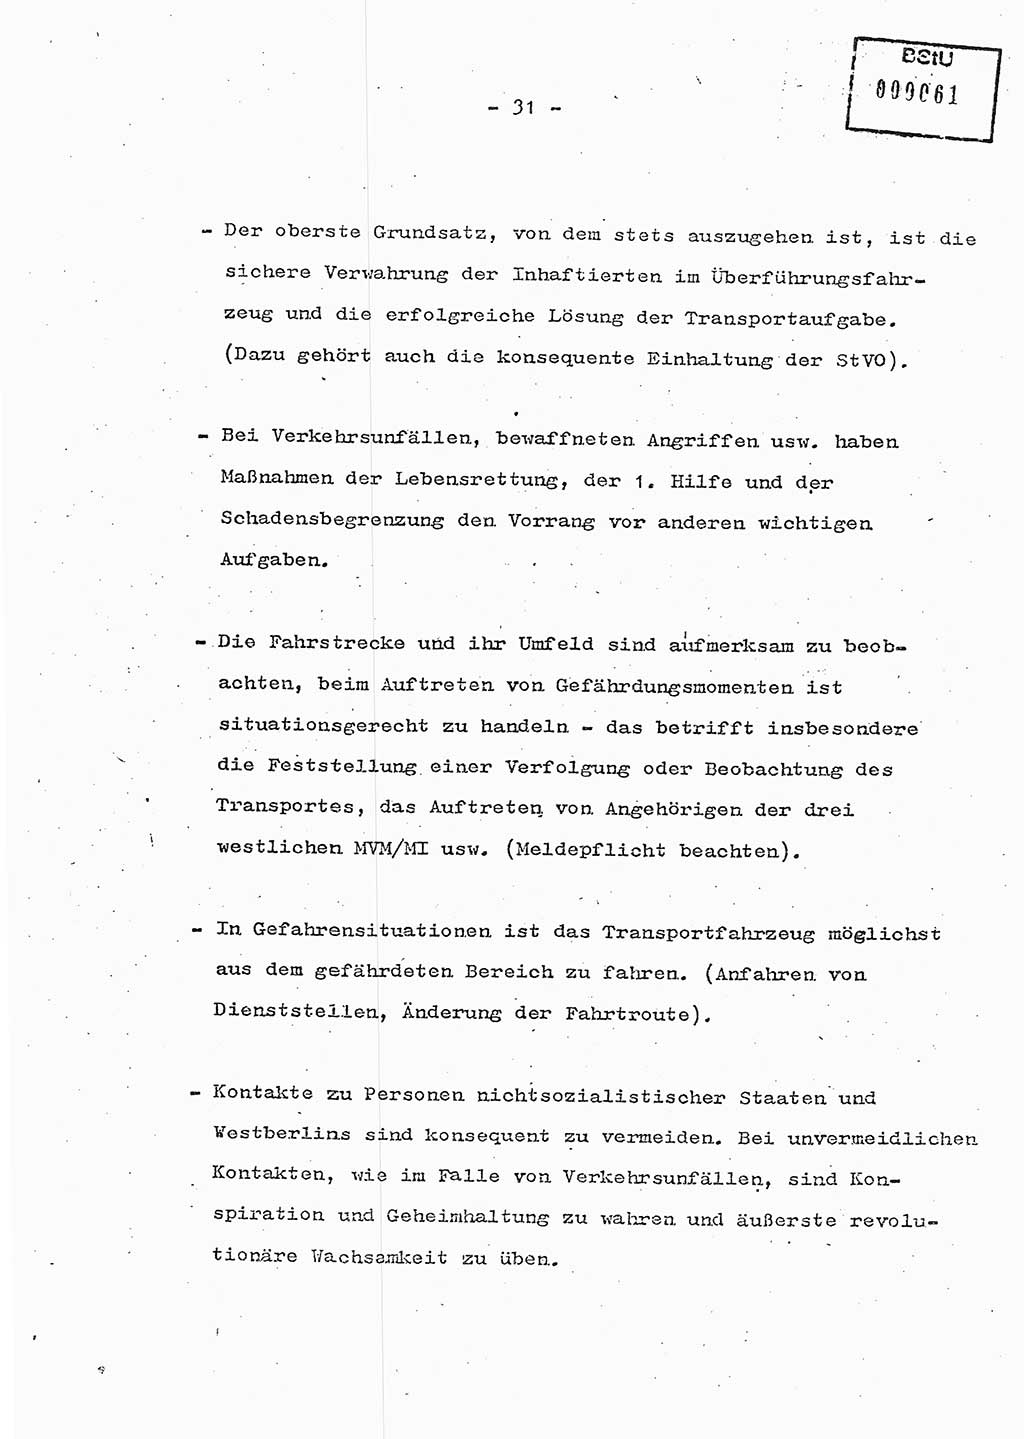 Schulungsmaterial Exemplar-Nr.: 7, Ministerium für Staatssicherheit [Deutsche Demokratische Republik (DDR)], Abteilung (Abt.) ⅩⅣ, Berlin 1986, Seite 31 (Sch.-Mat. Expl. 7 MfS DDR Abt. ⅩⅣ /86 1986, S. 31)